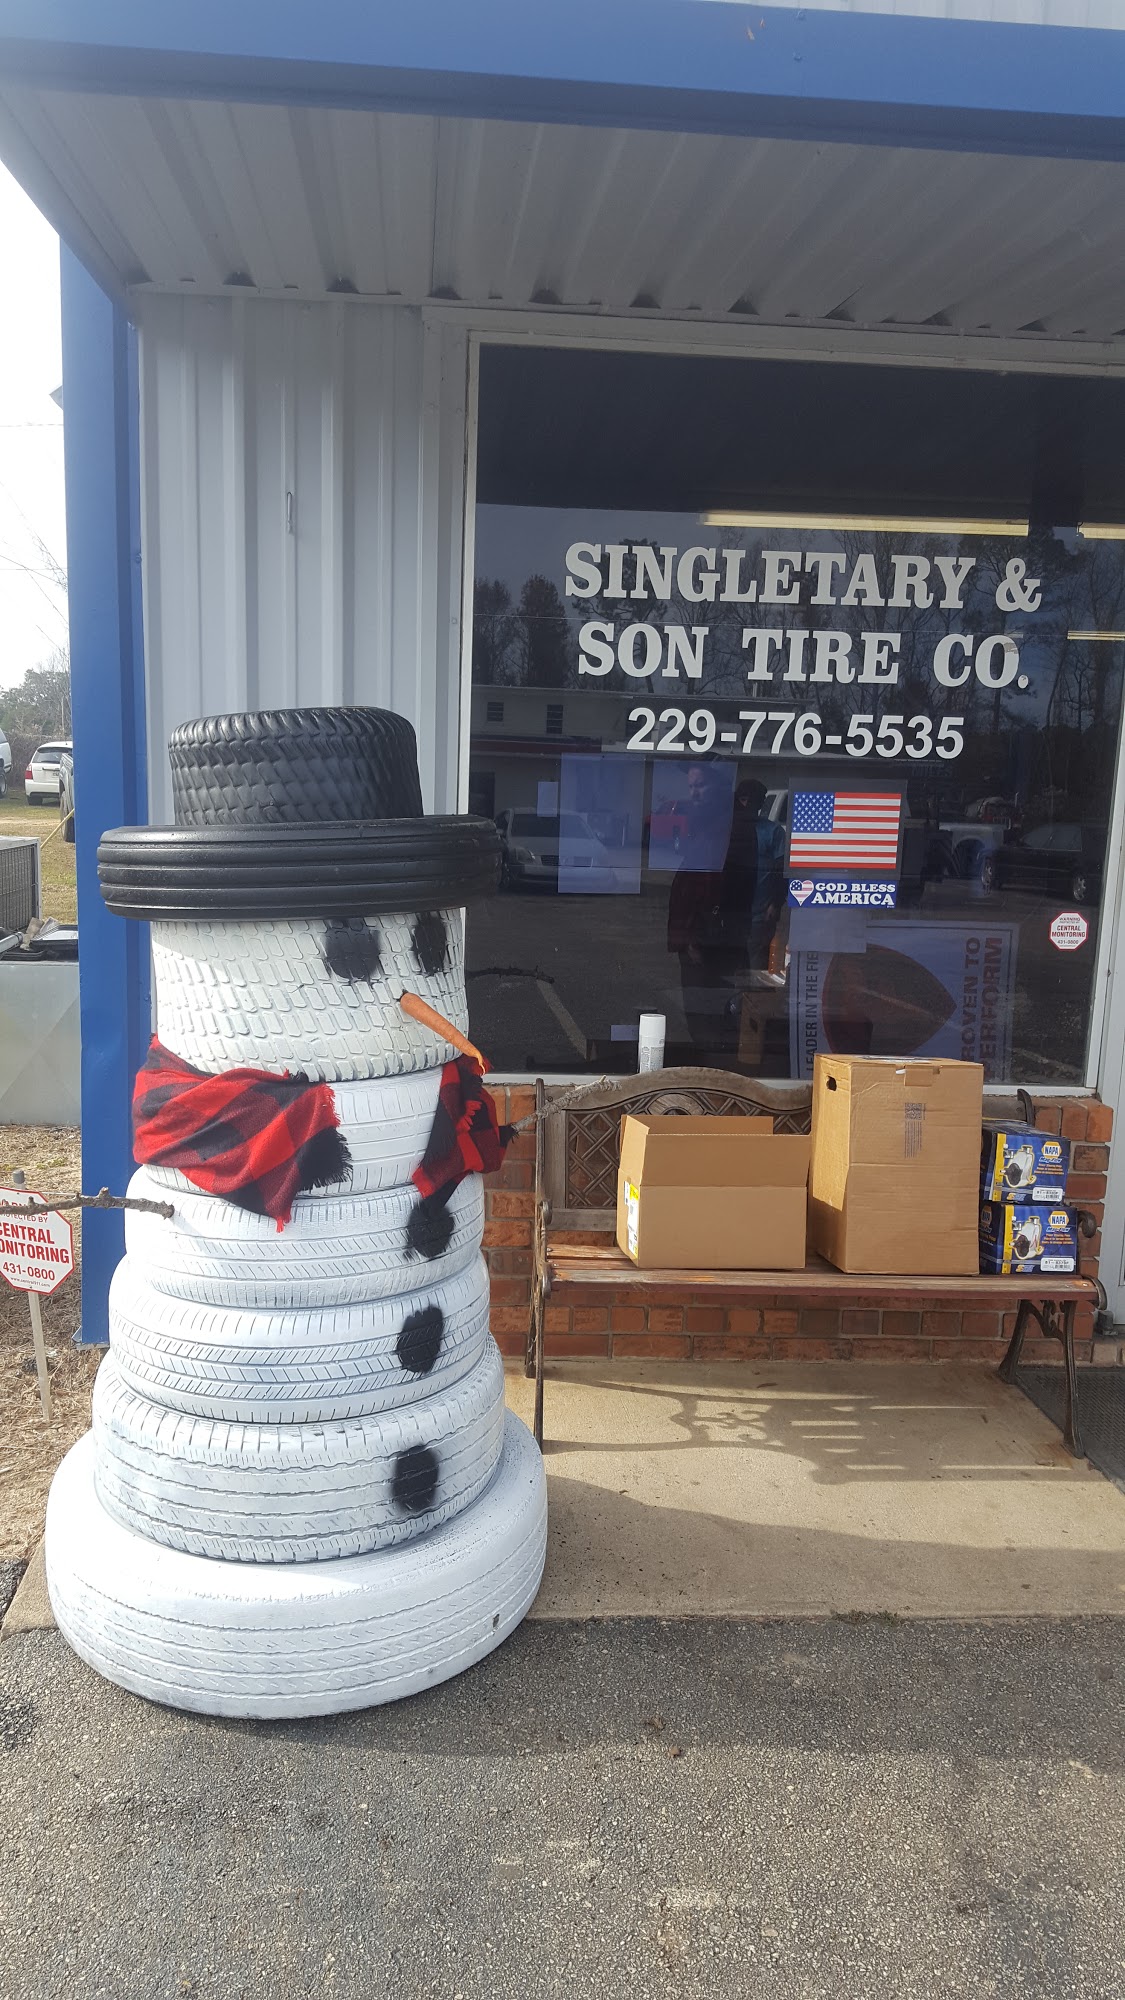 Singletary & Son Tire Company